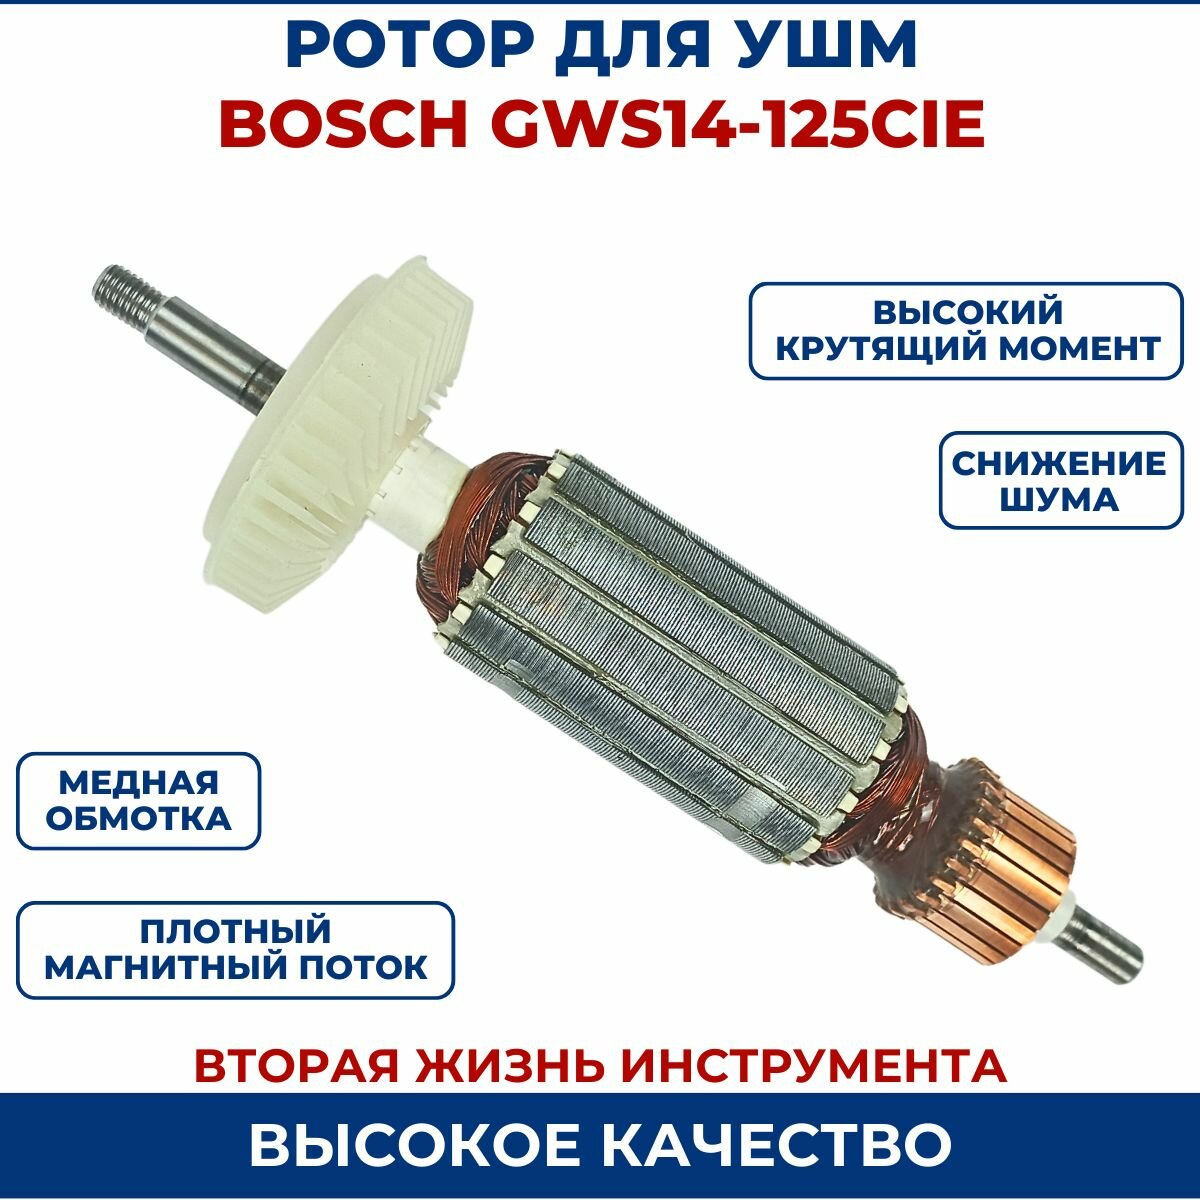 Ротор (Якорь) для УШМ BOSCH GWS14-125CIE